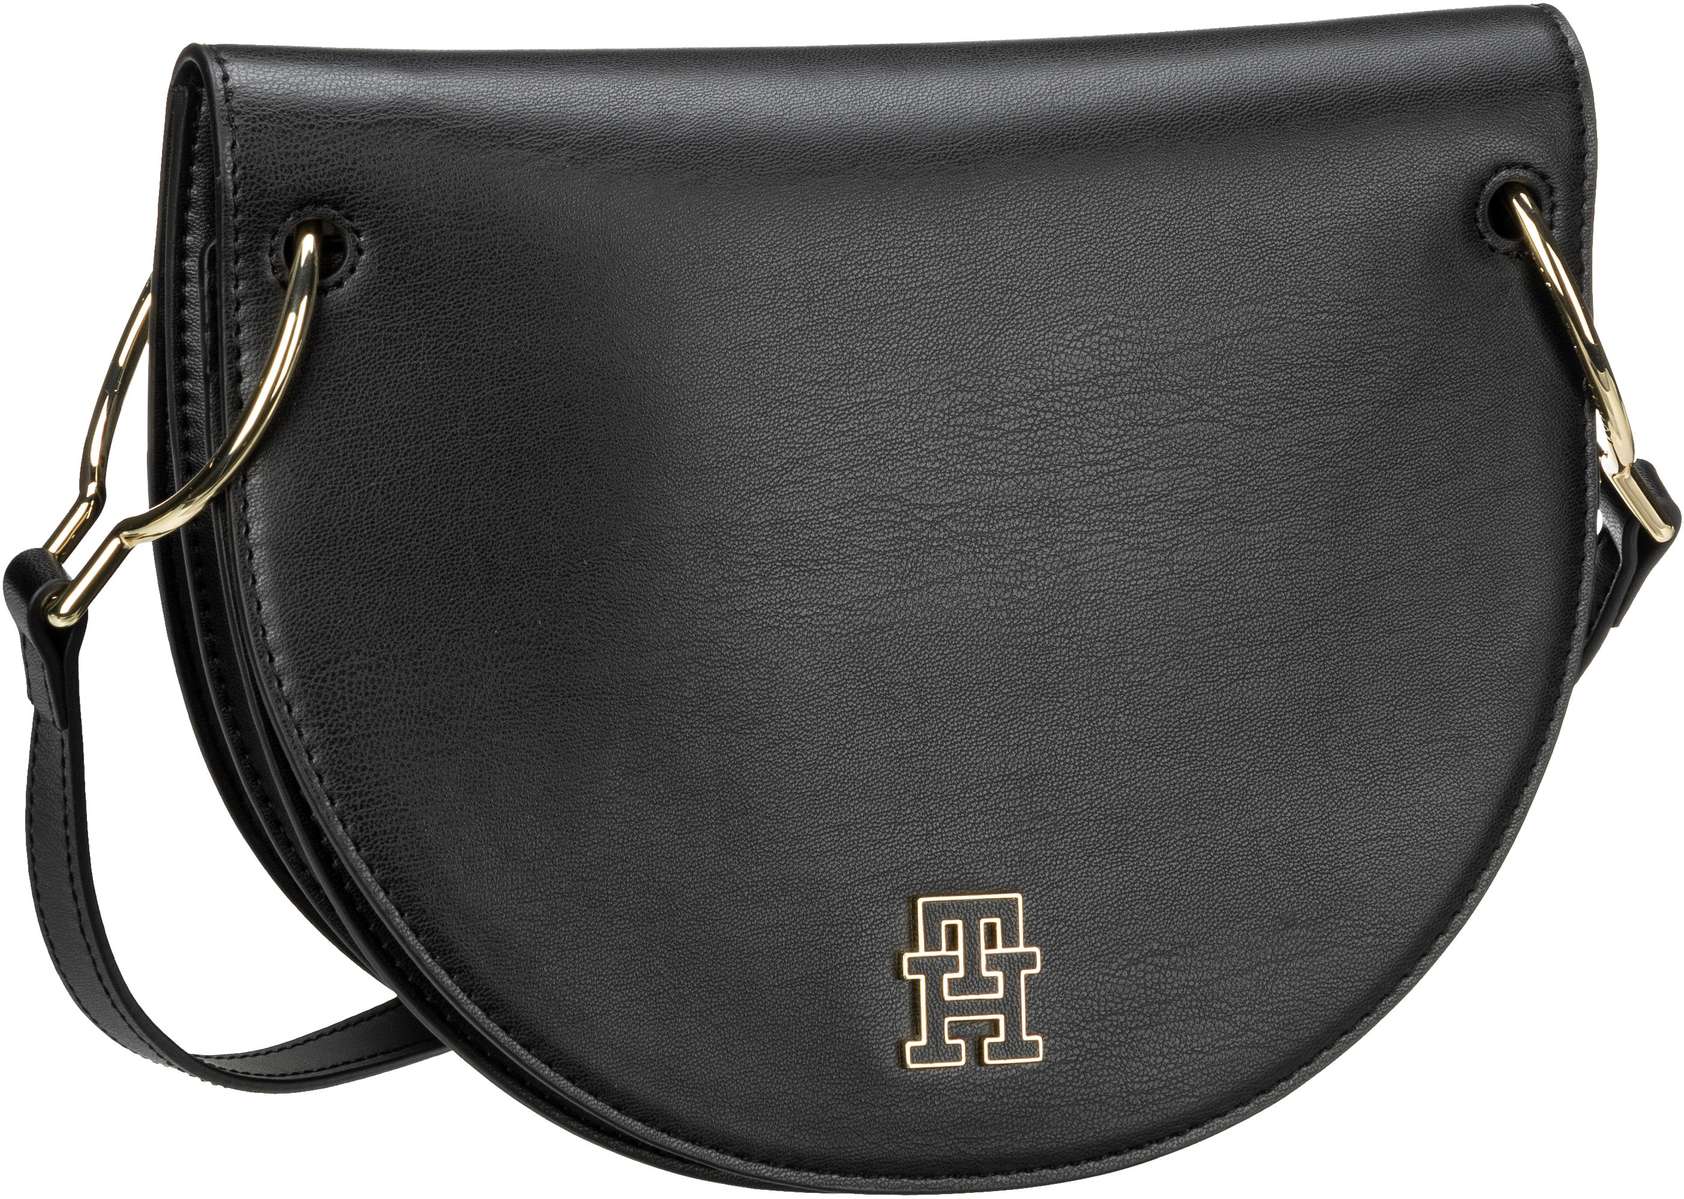 Tommy Hilfiger TH Chic Saddle Bag PF23  in Black (4.3 Liter), Saddle Bag